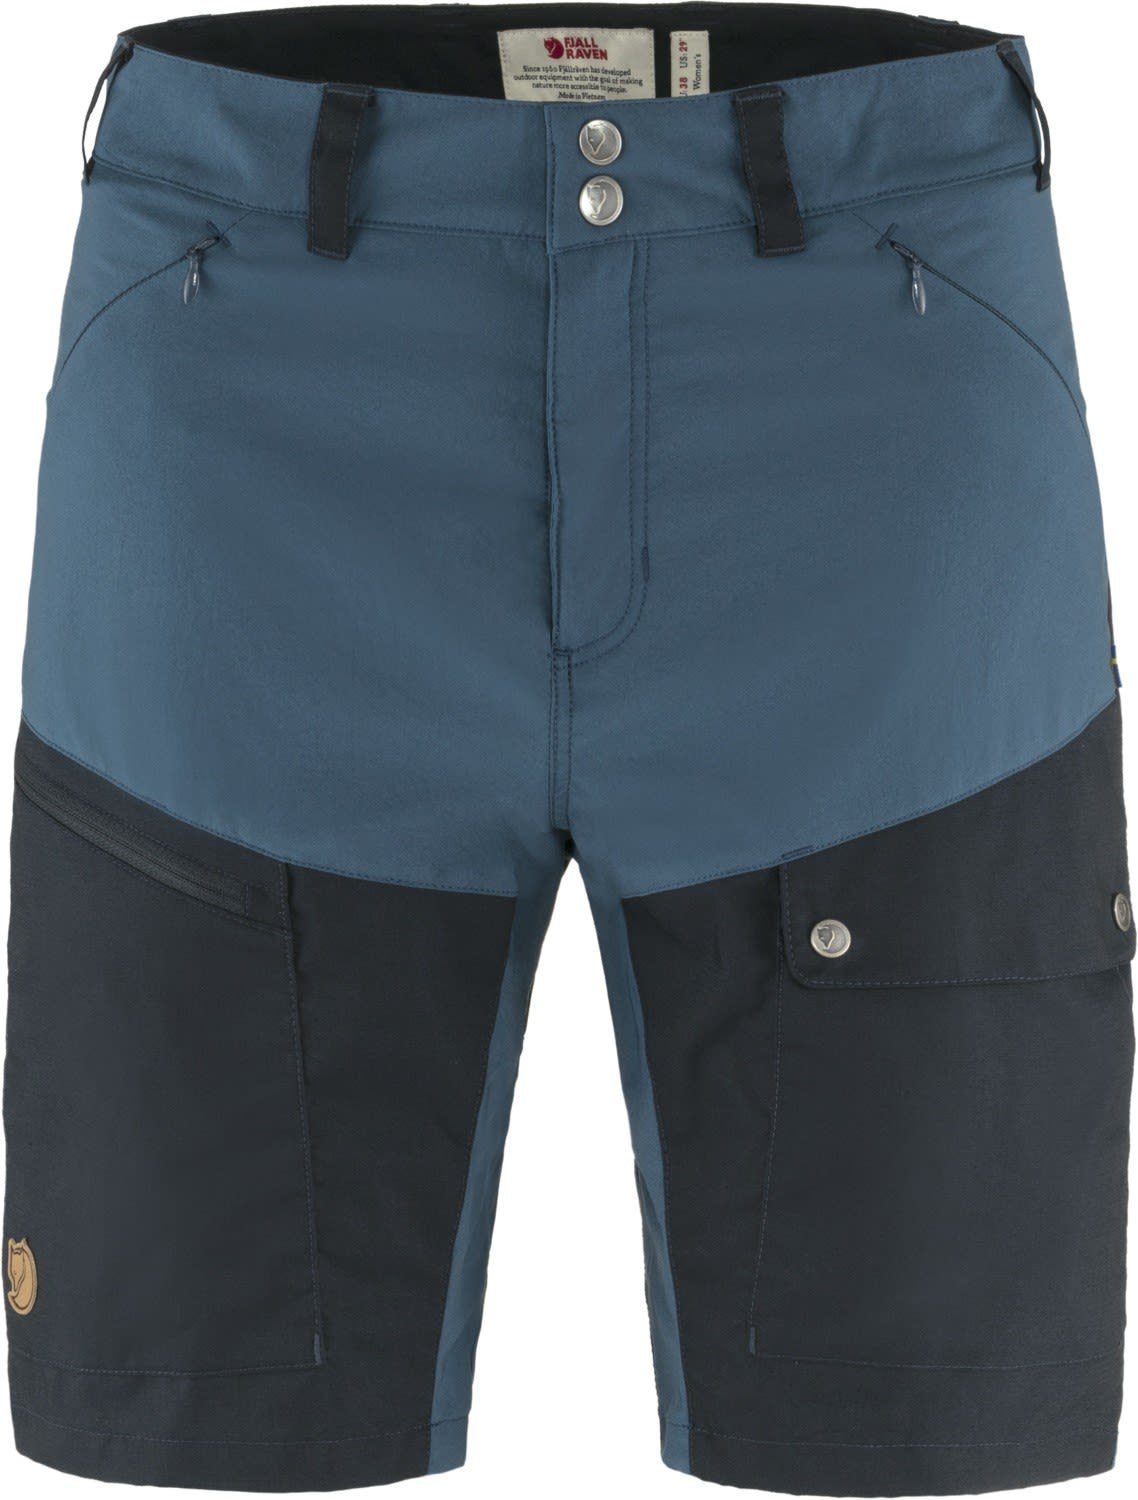 Abisko Navy Shorts Fjällräven Midsummer W Dark Shorts - Strandshorts Indigo Damen Fjällräven Blue